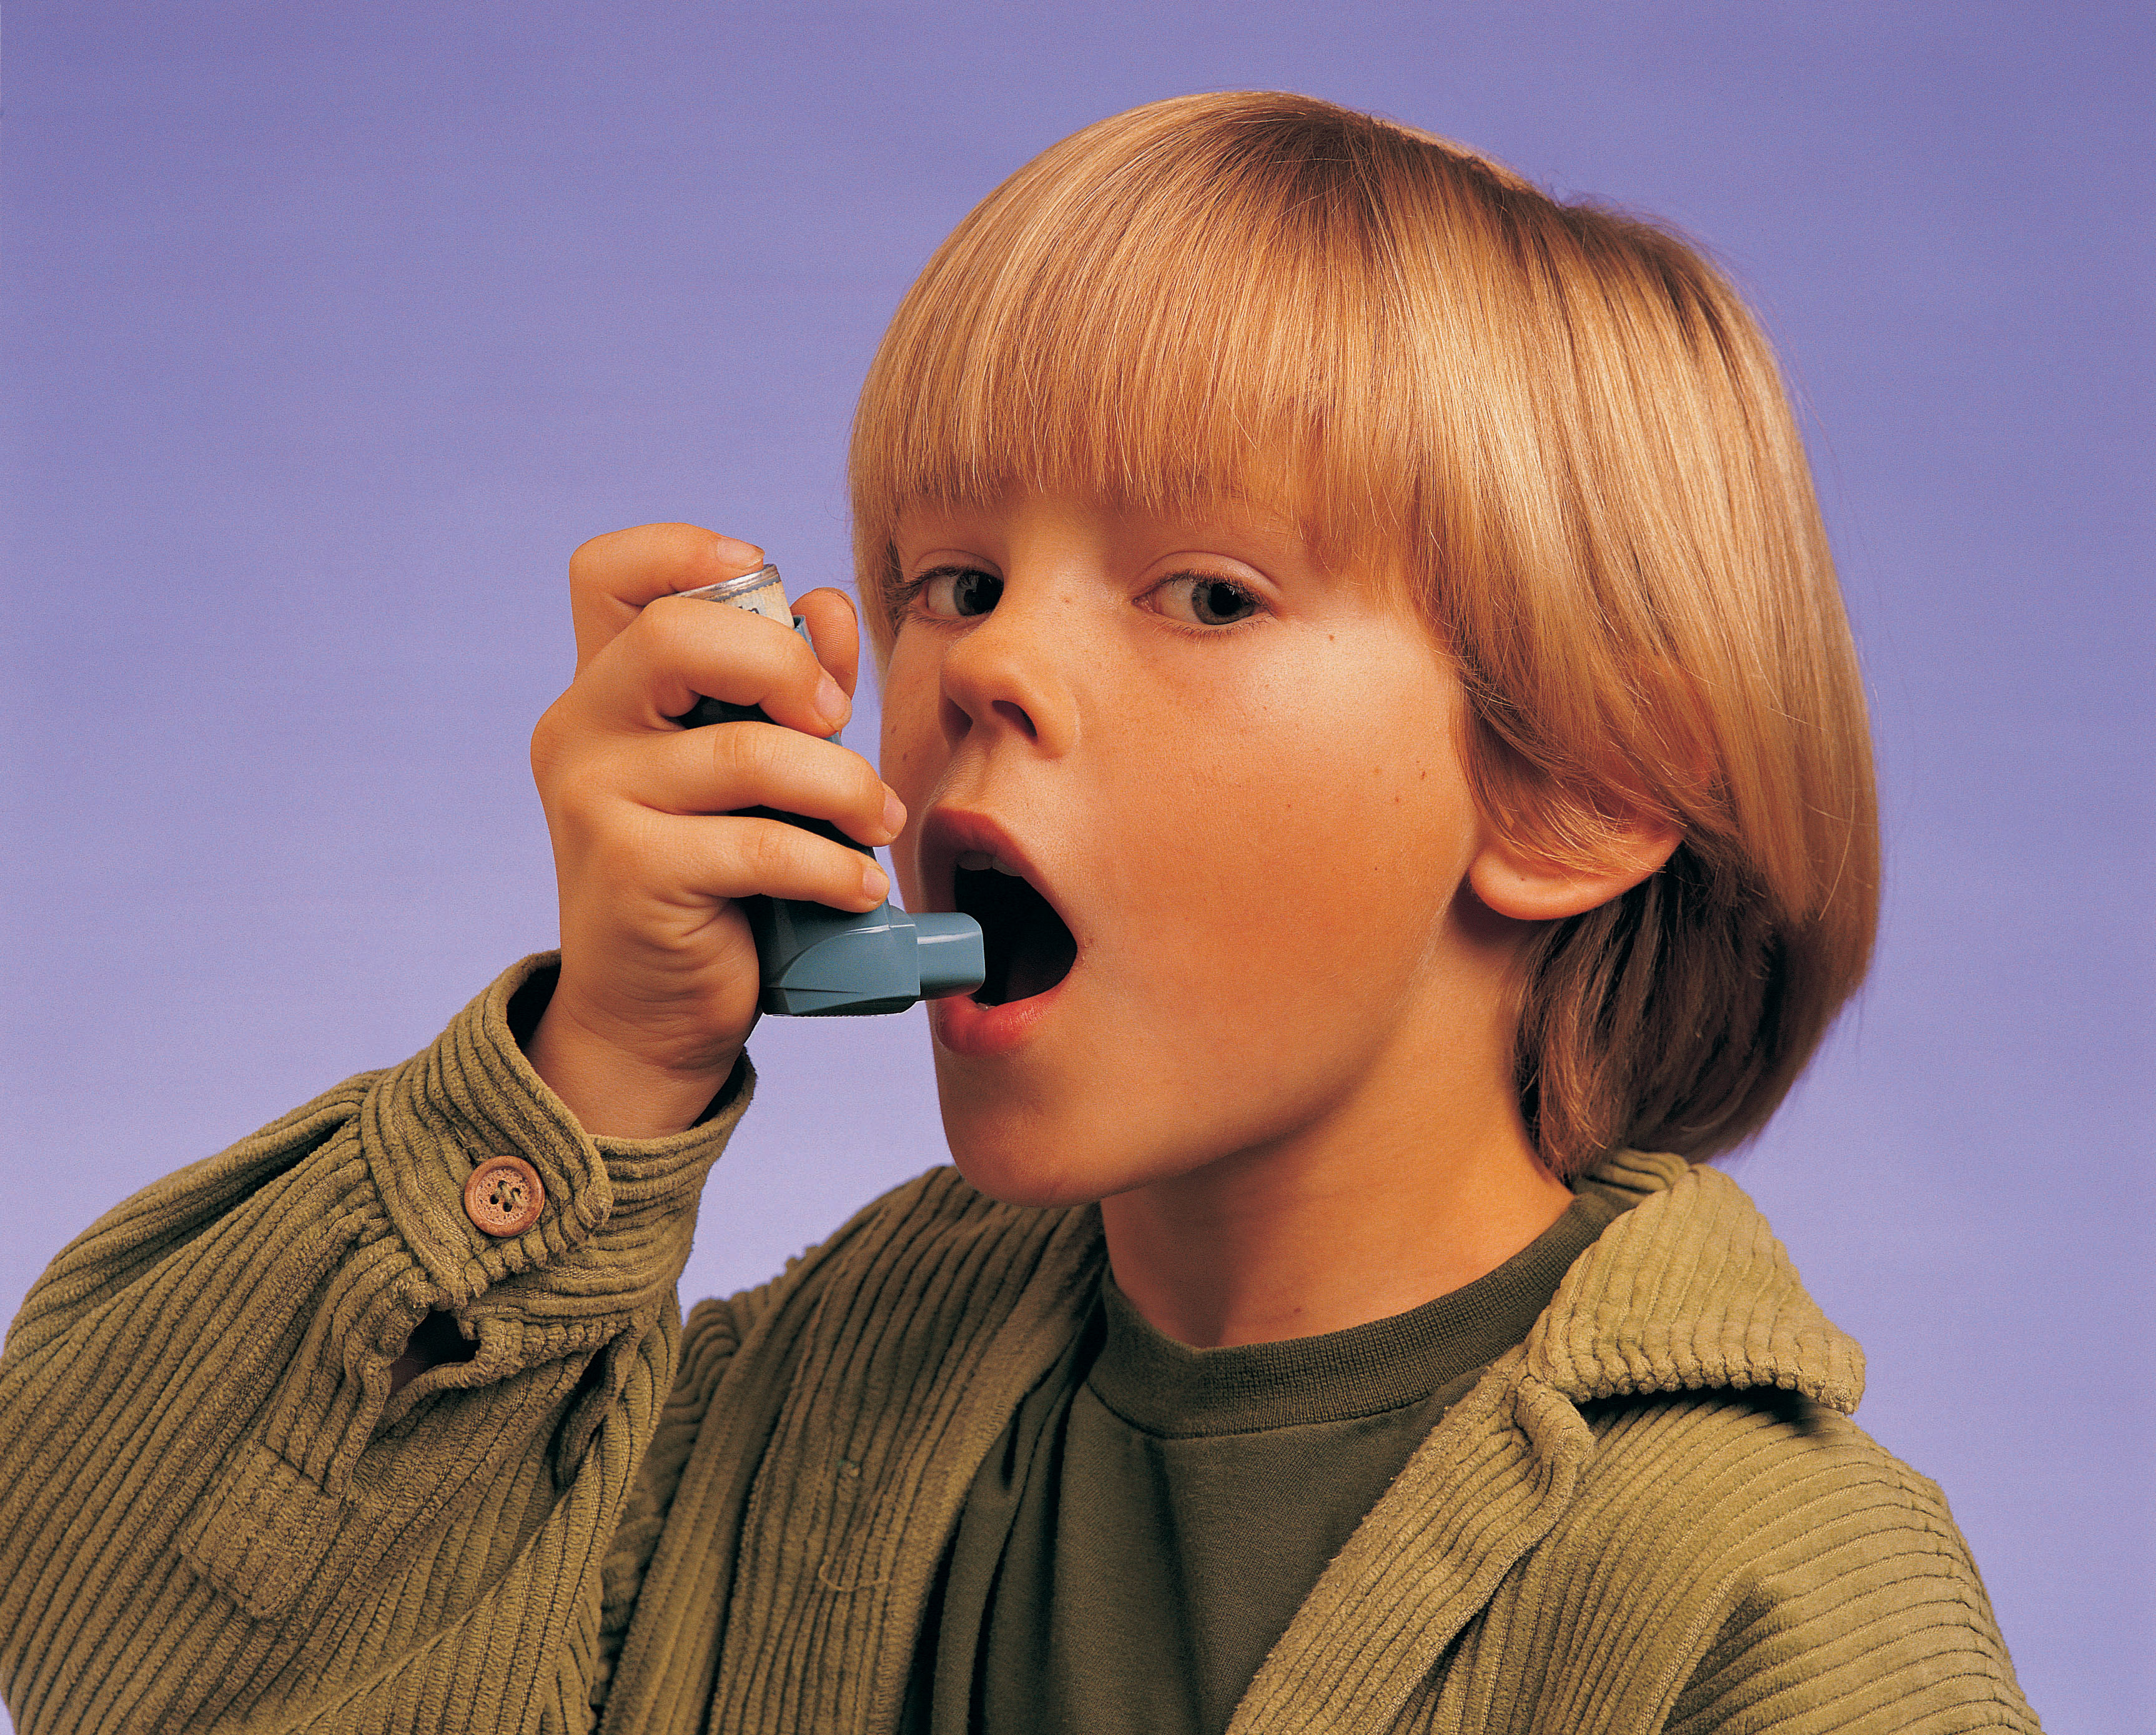 A young boy using an inhaler